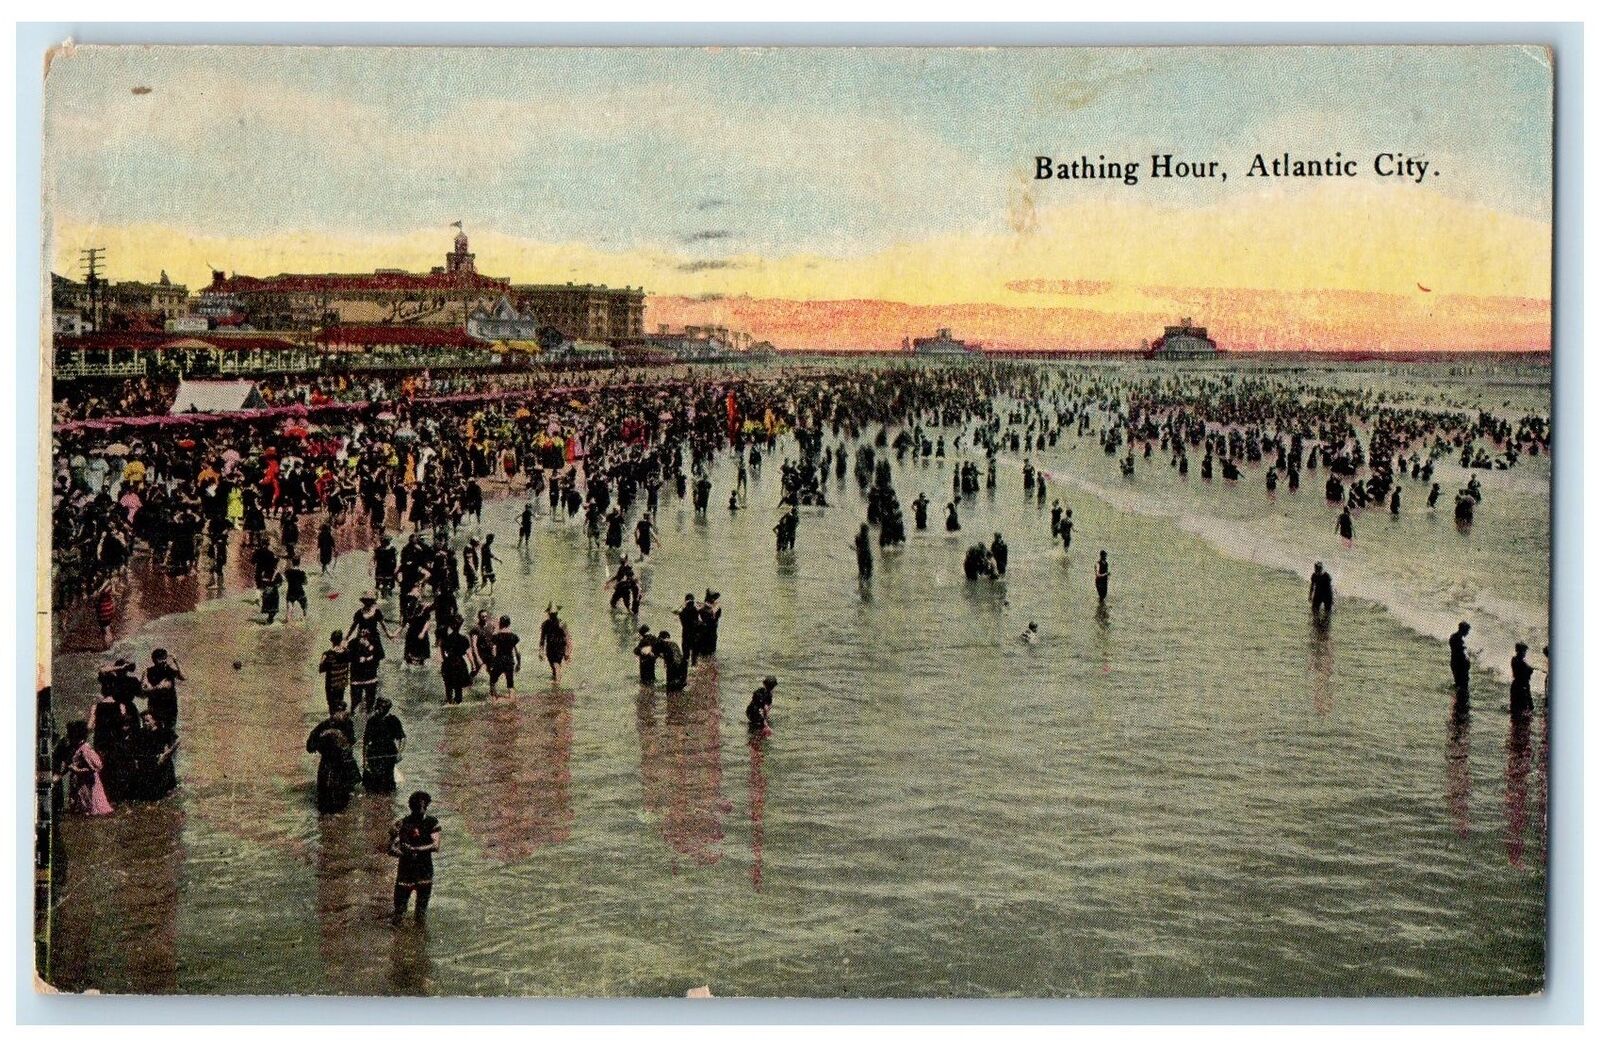 1914 Bathing Hour Crowd Buildings Boardwalk Atlantic City New Jersey NJ Postcard